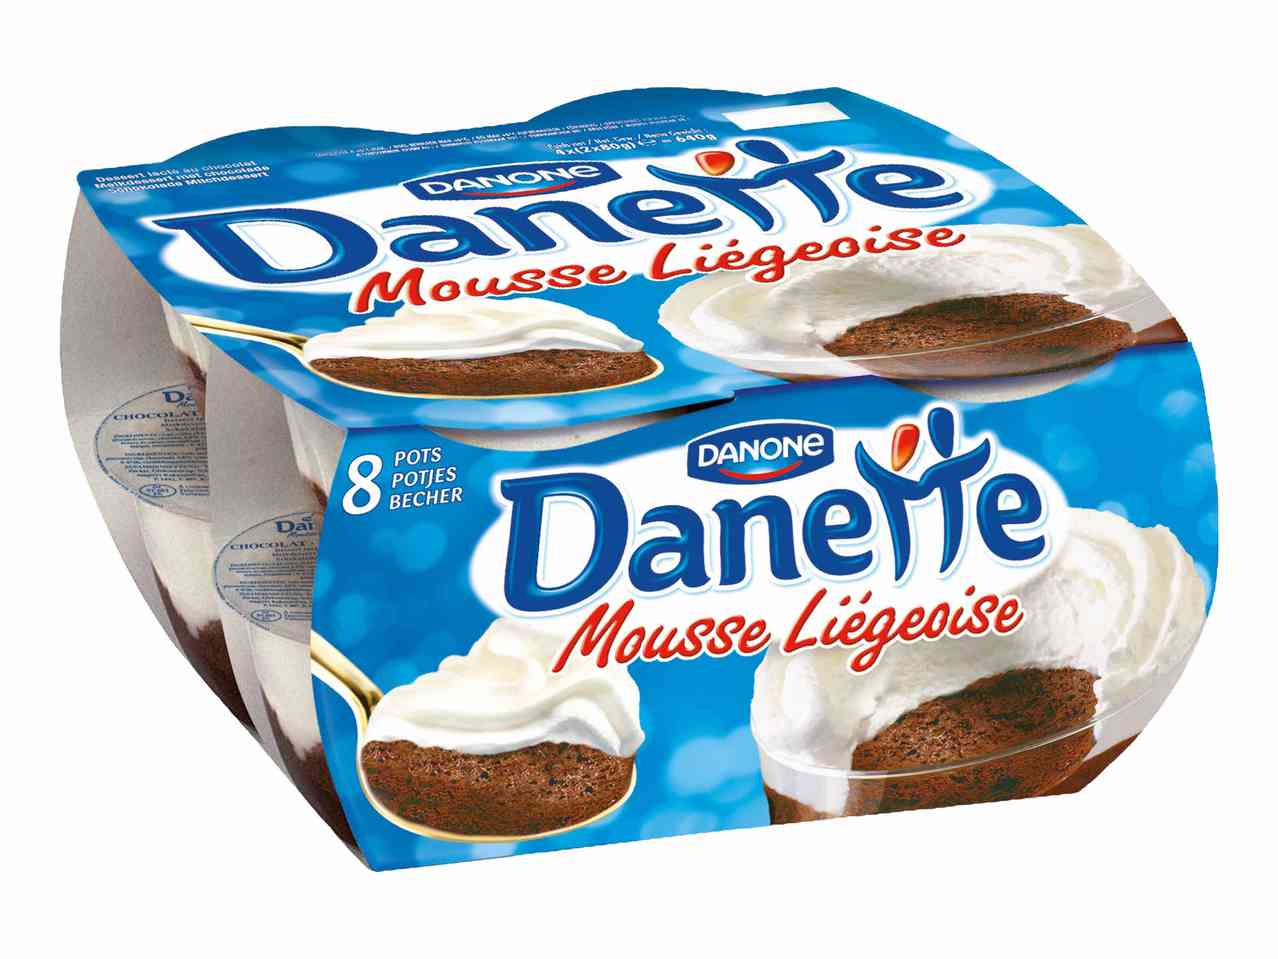 Danone Danette Mousse liégeoise